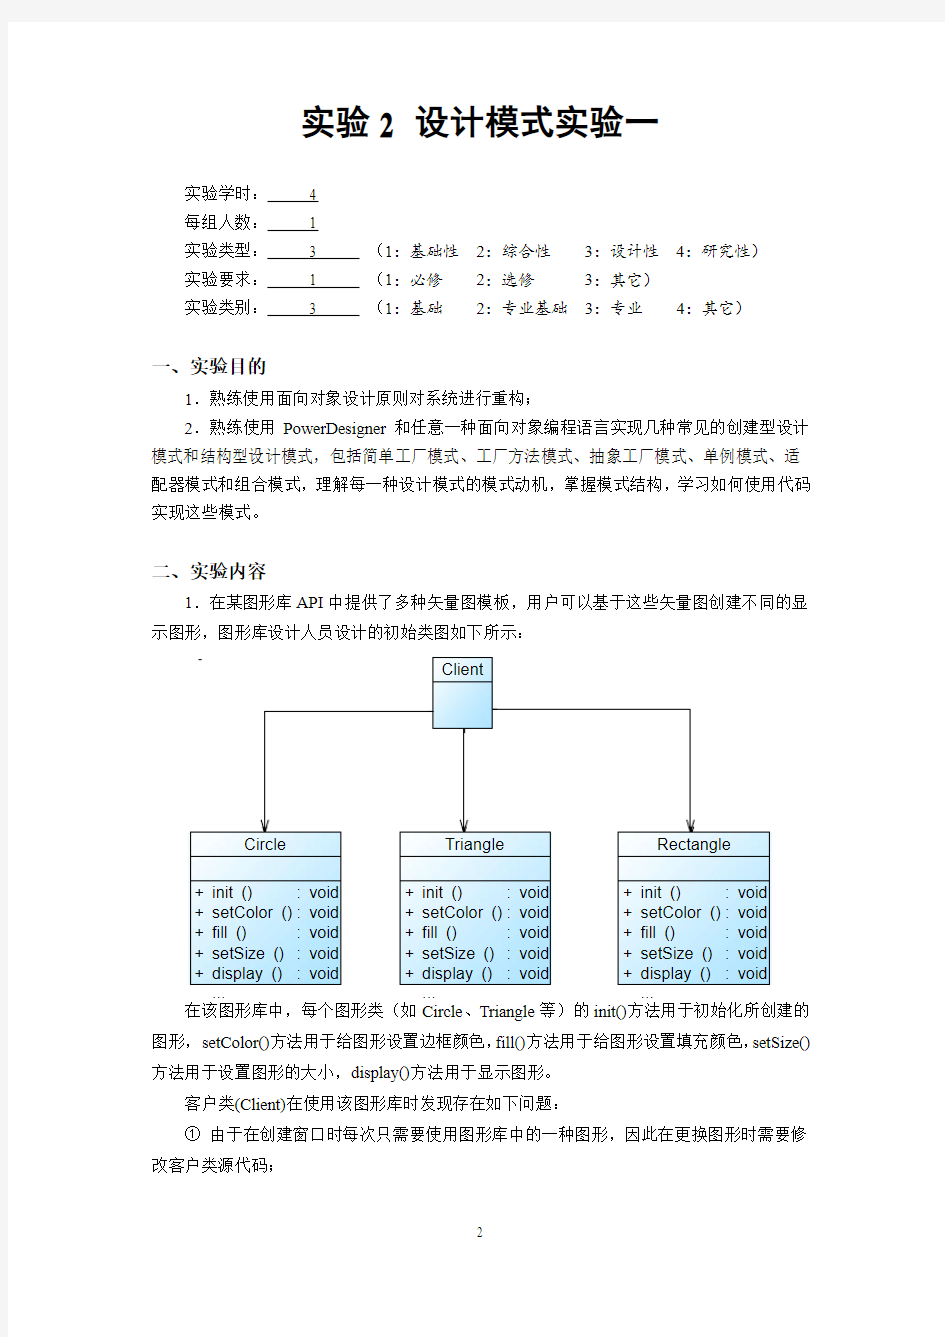 中南大学软件学院体系结构实验报告-实验2